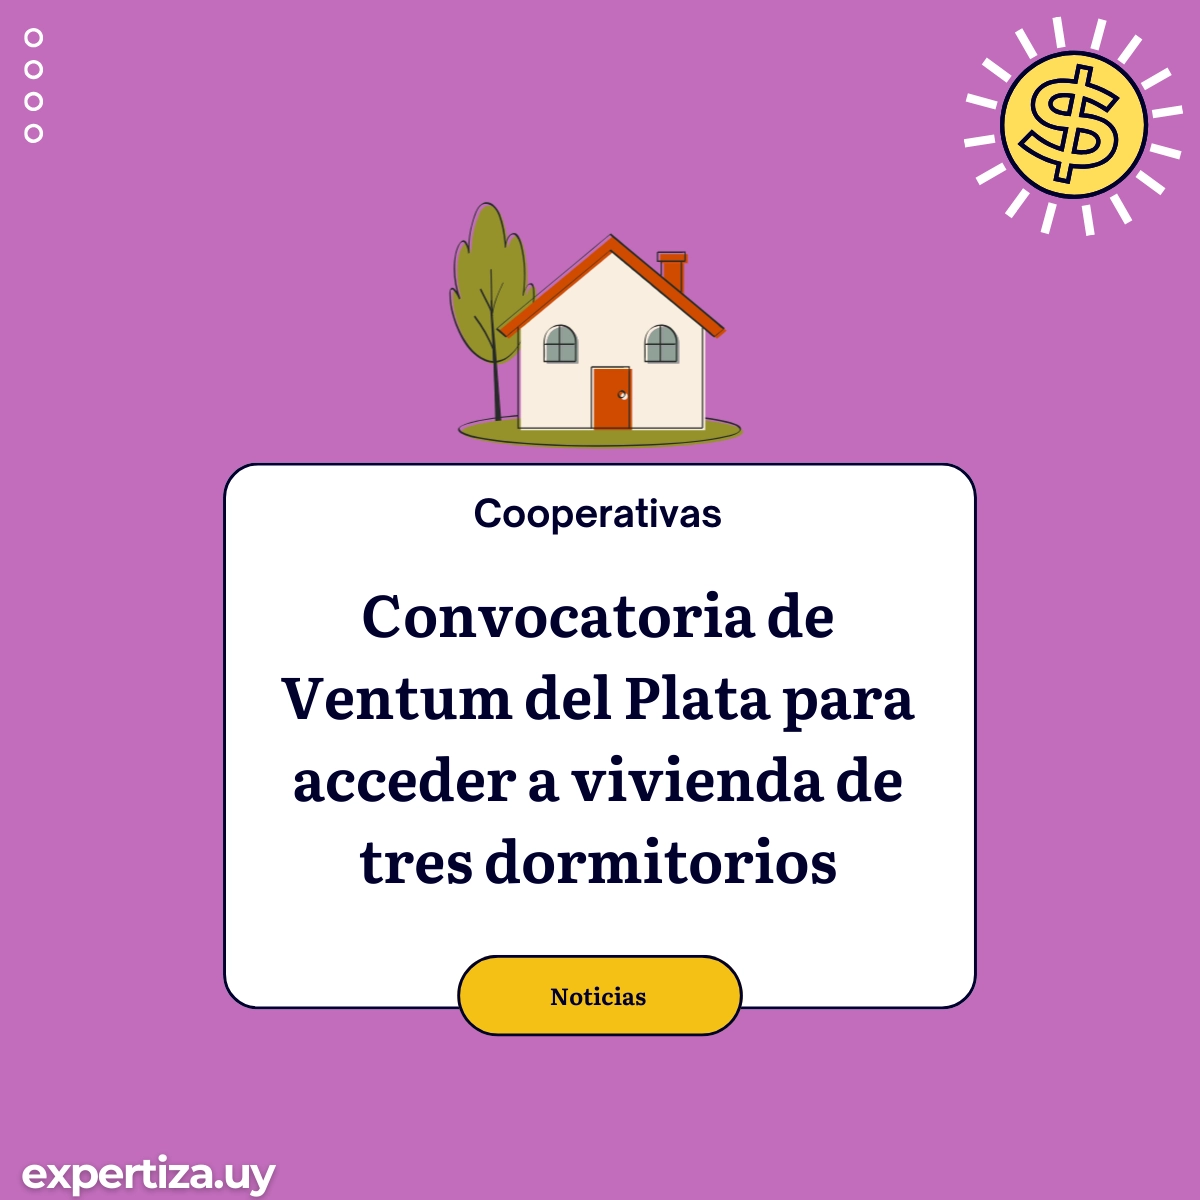 Convocatoria de Ventum del Plata para acceder a vivienda de tres dormitorios.